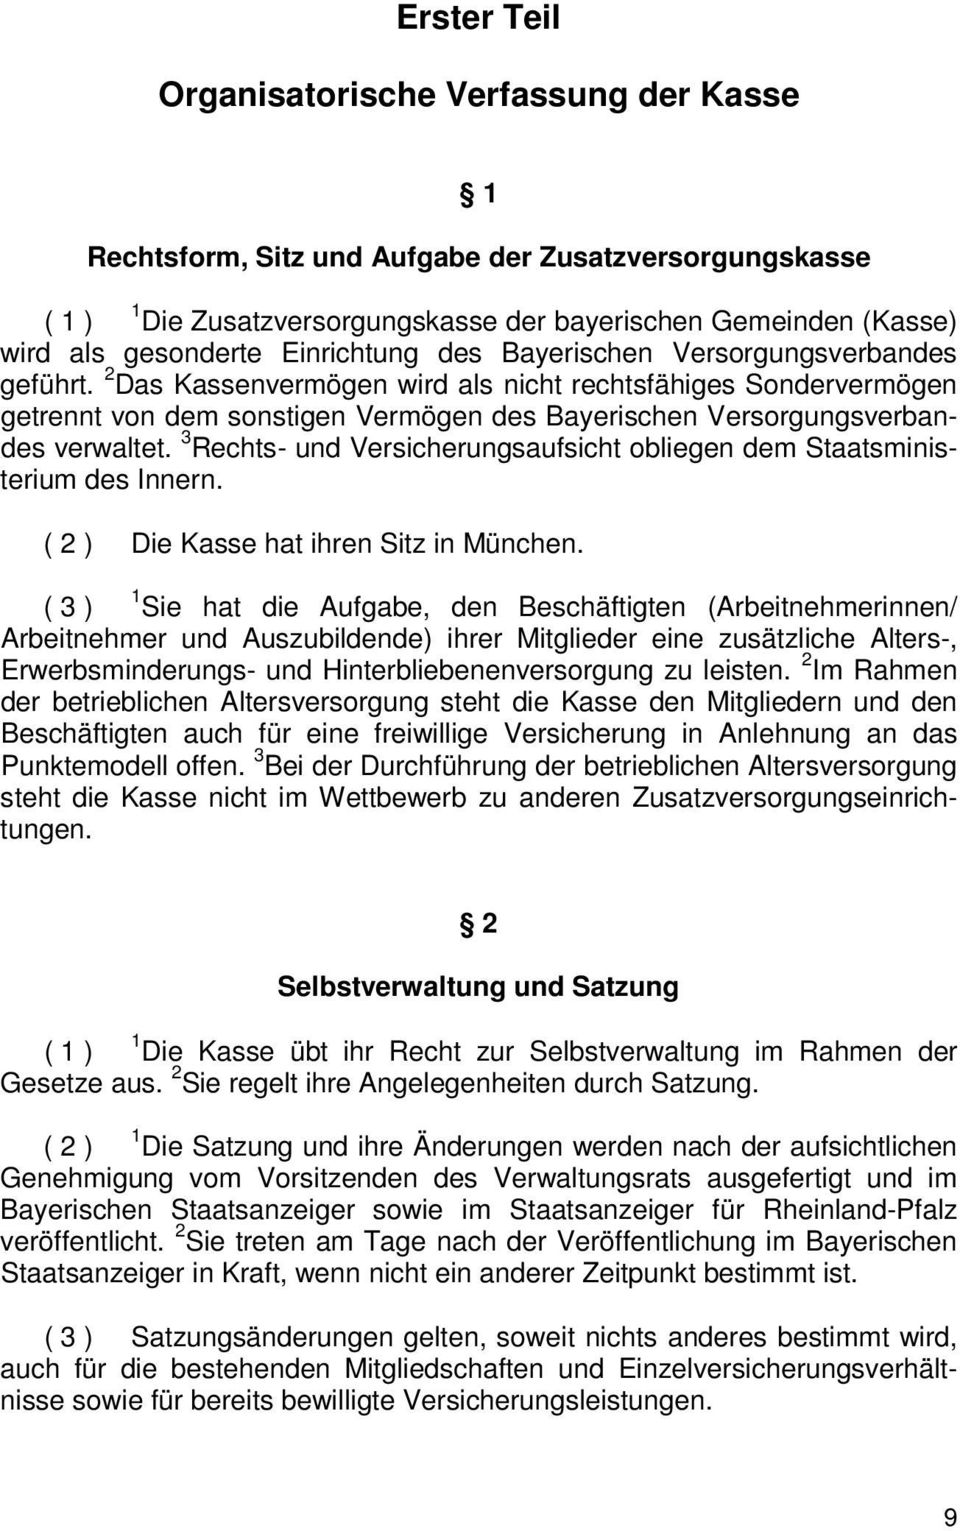 2 Das Kassenvermögen wird als nicht rechtsfähiges Sondervermögen getrennt von dem sonstigen Vermögen des Bayerischen Versorgungsverbandes verwaltet.